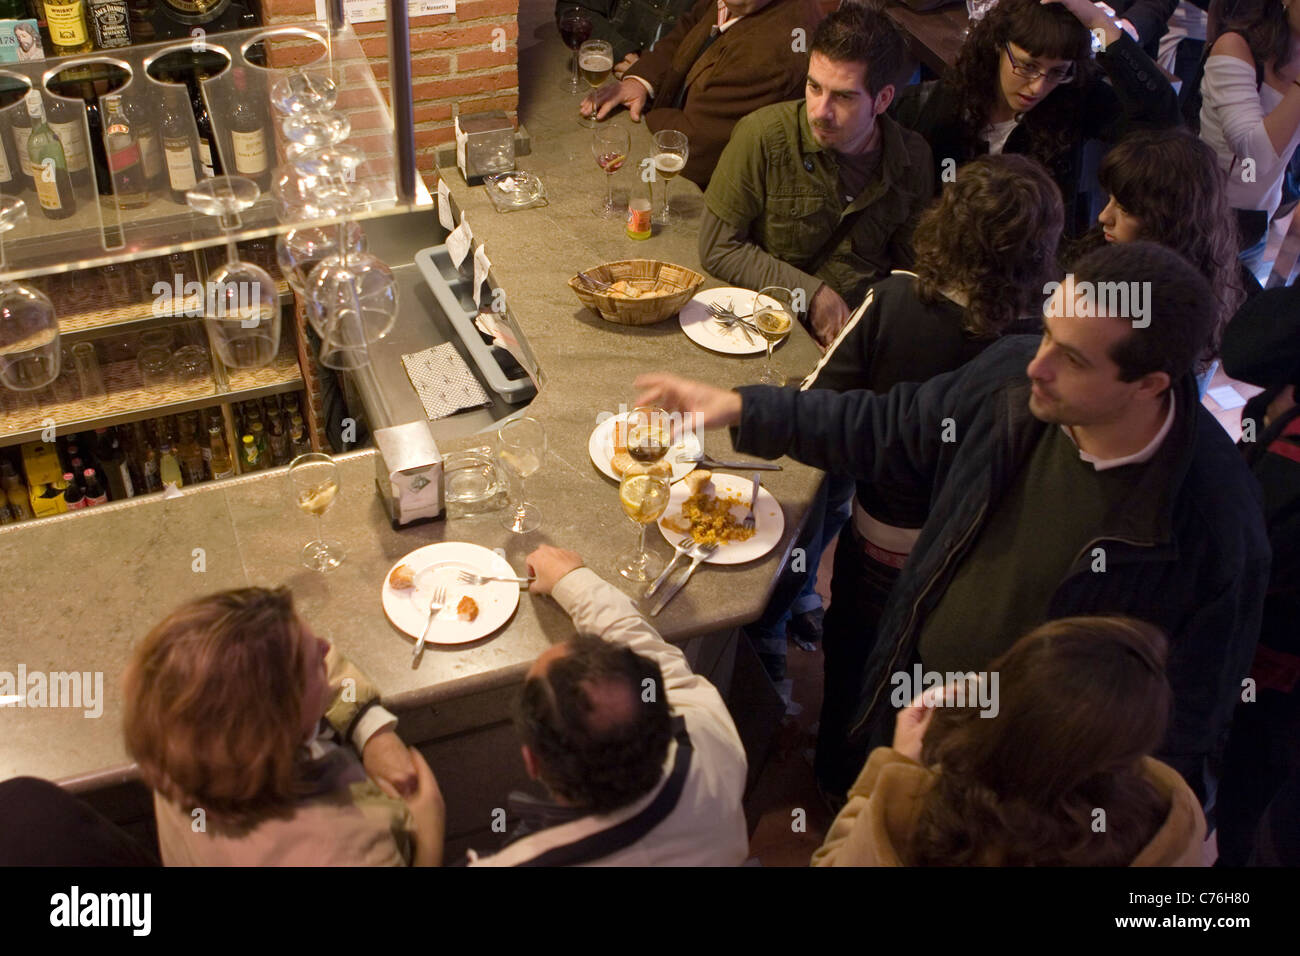 En el centro de Granada abundan los bares para tomar tapas y aperitivos. Stock Photo